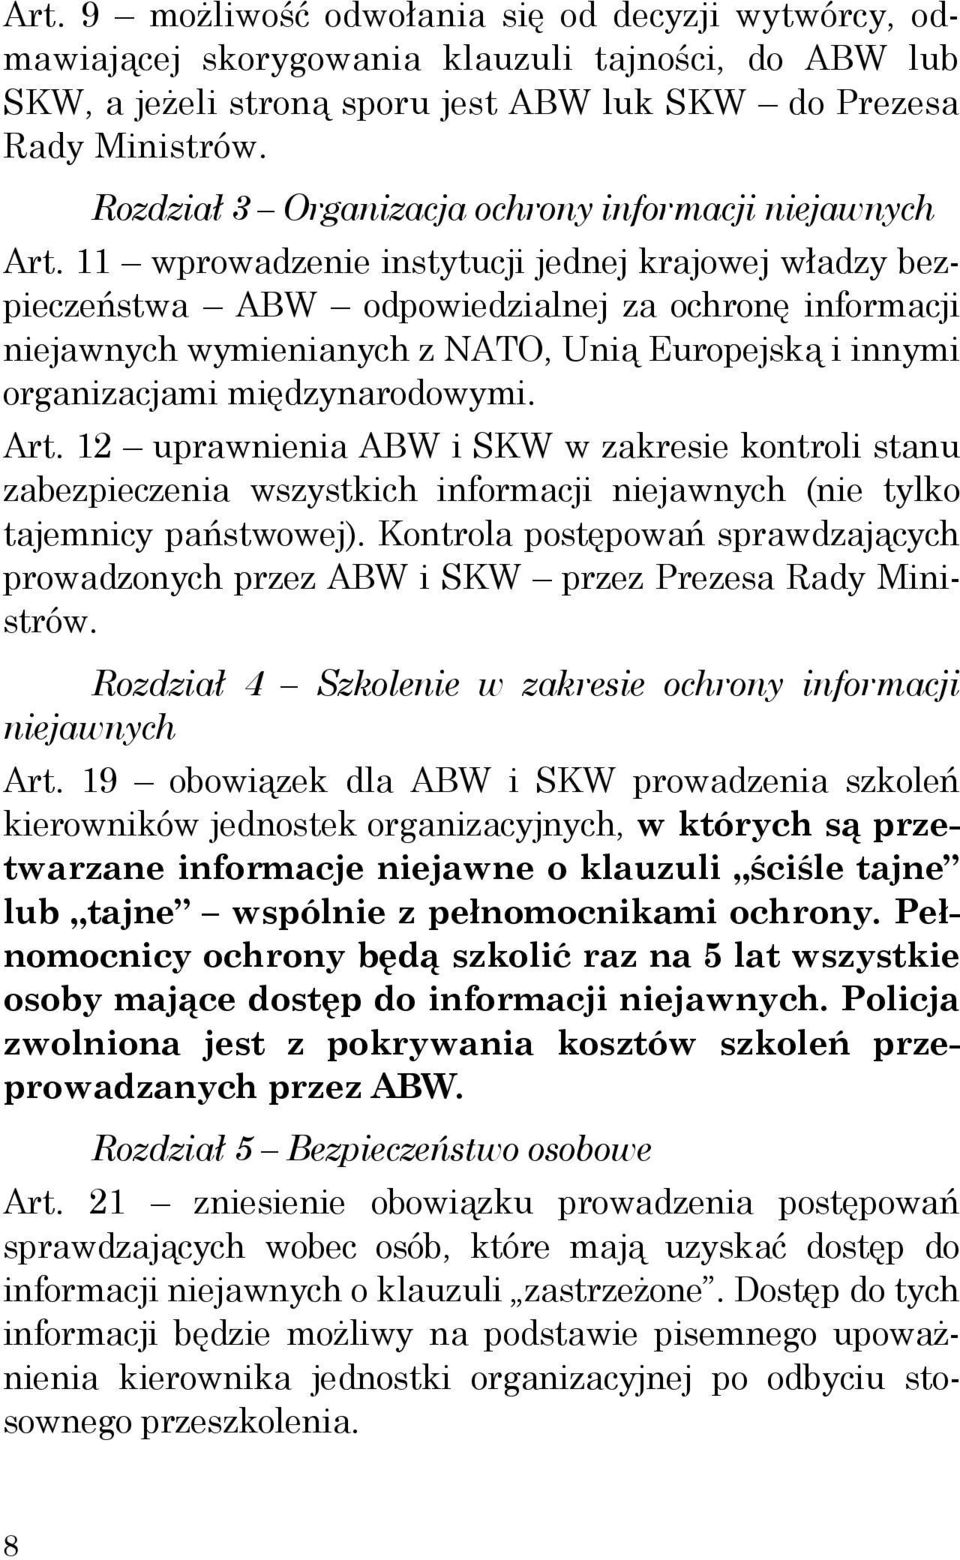 11 wprowadzenie instytucji jednej krajowej władzy bezpieczeństwa ABW odpowiedzialnej za ochronę informacji niejawnych wymienianych z NATO, Unią Europejską i innymi organizacjami międzynarodowymi. Art.